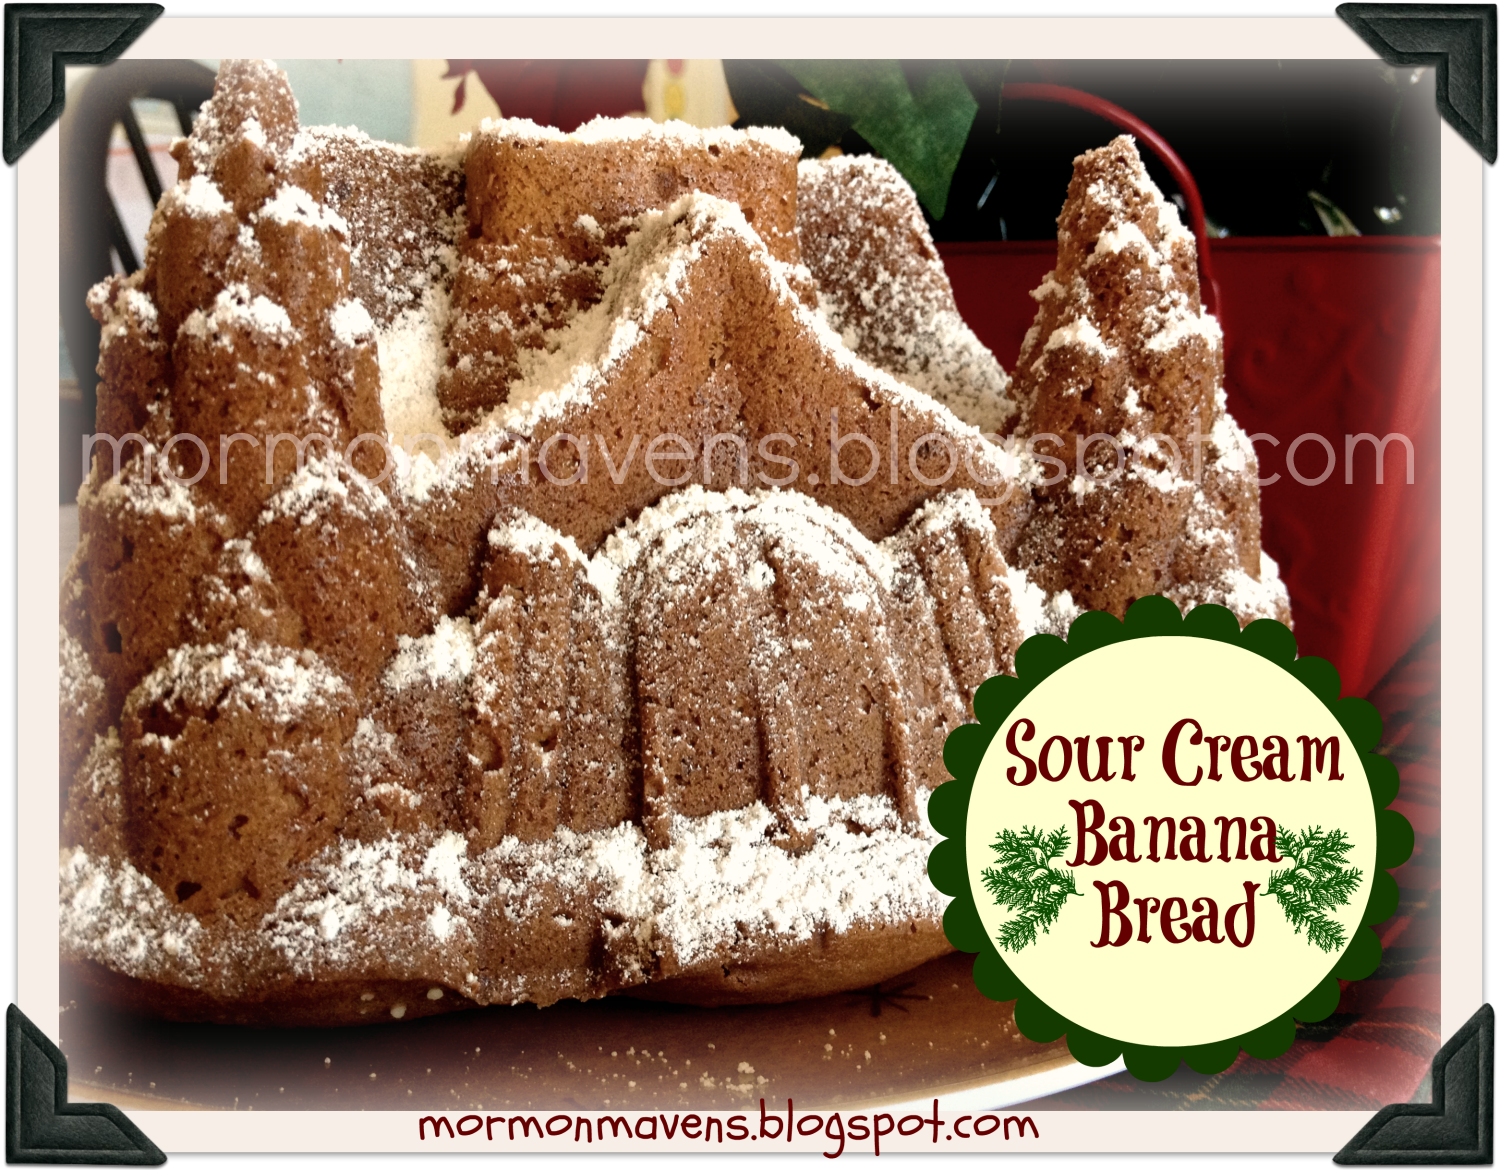 Mormon Mavens in the Kitchen: Sour Cream Banana Bread